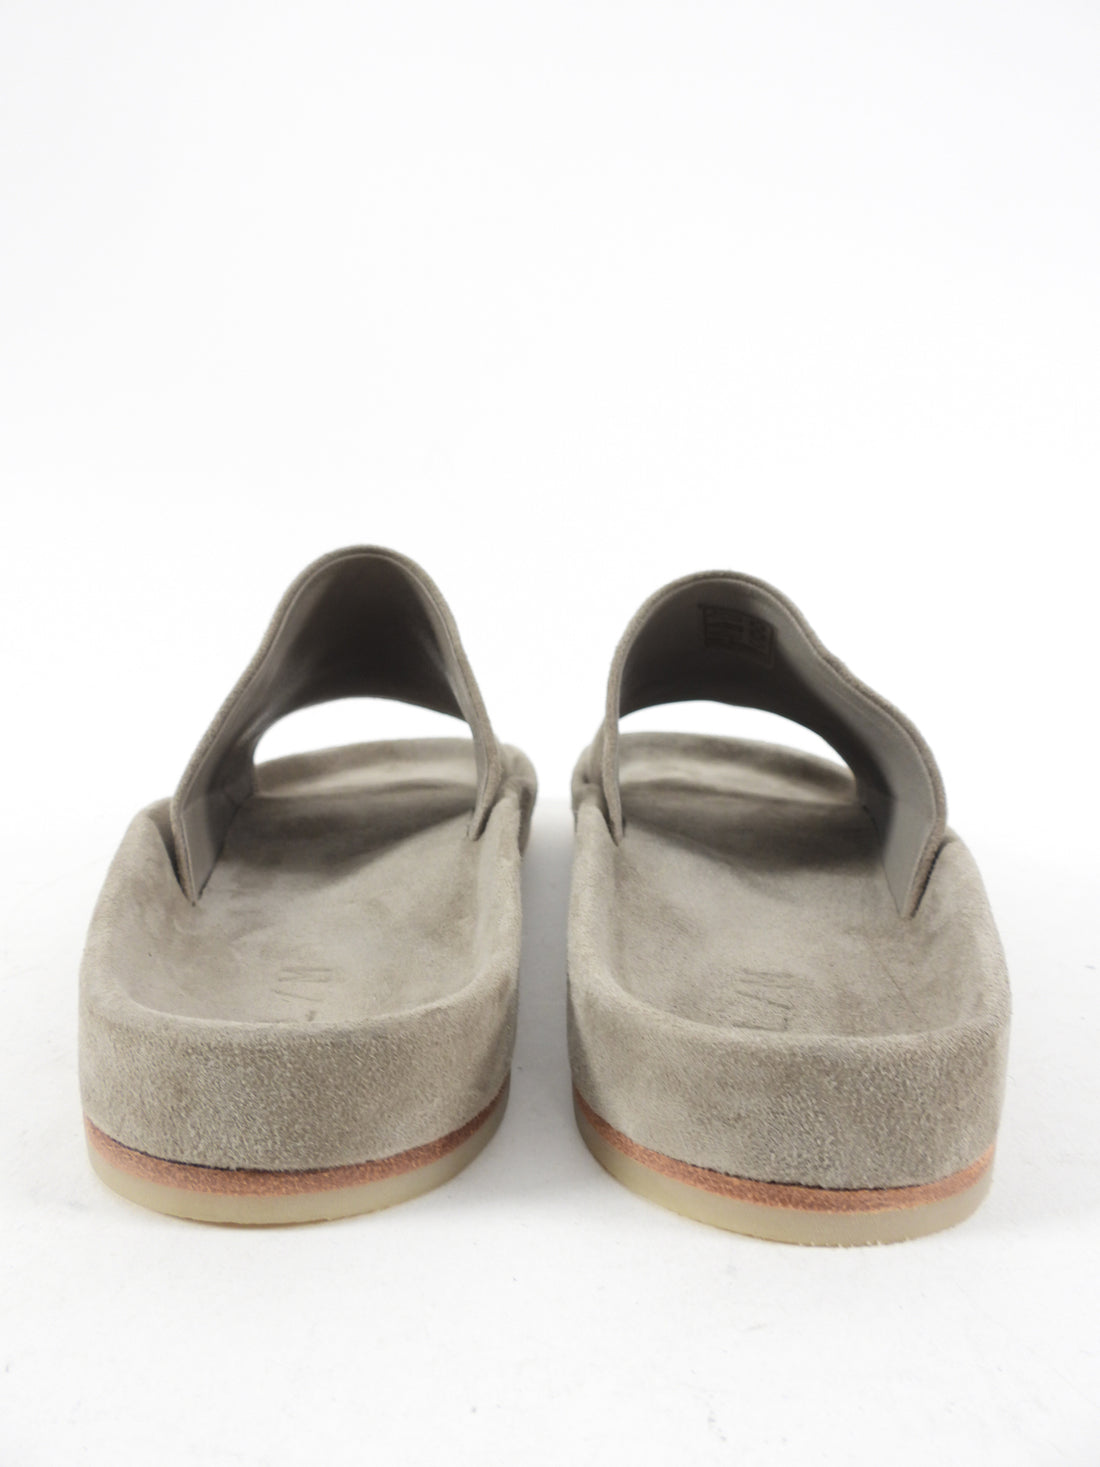 Lauren Manoogian Taupe Suede Flat Slide Sandals - 6.5